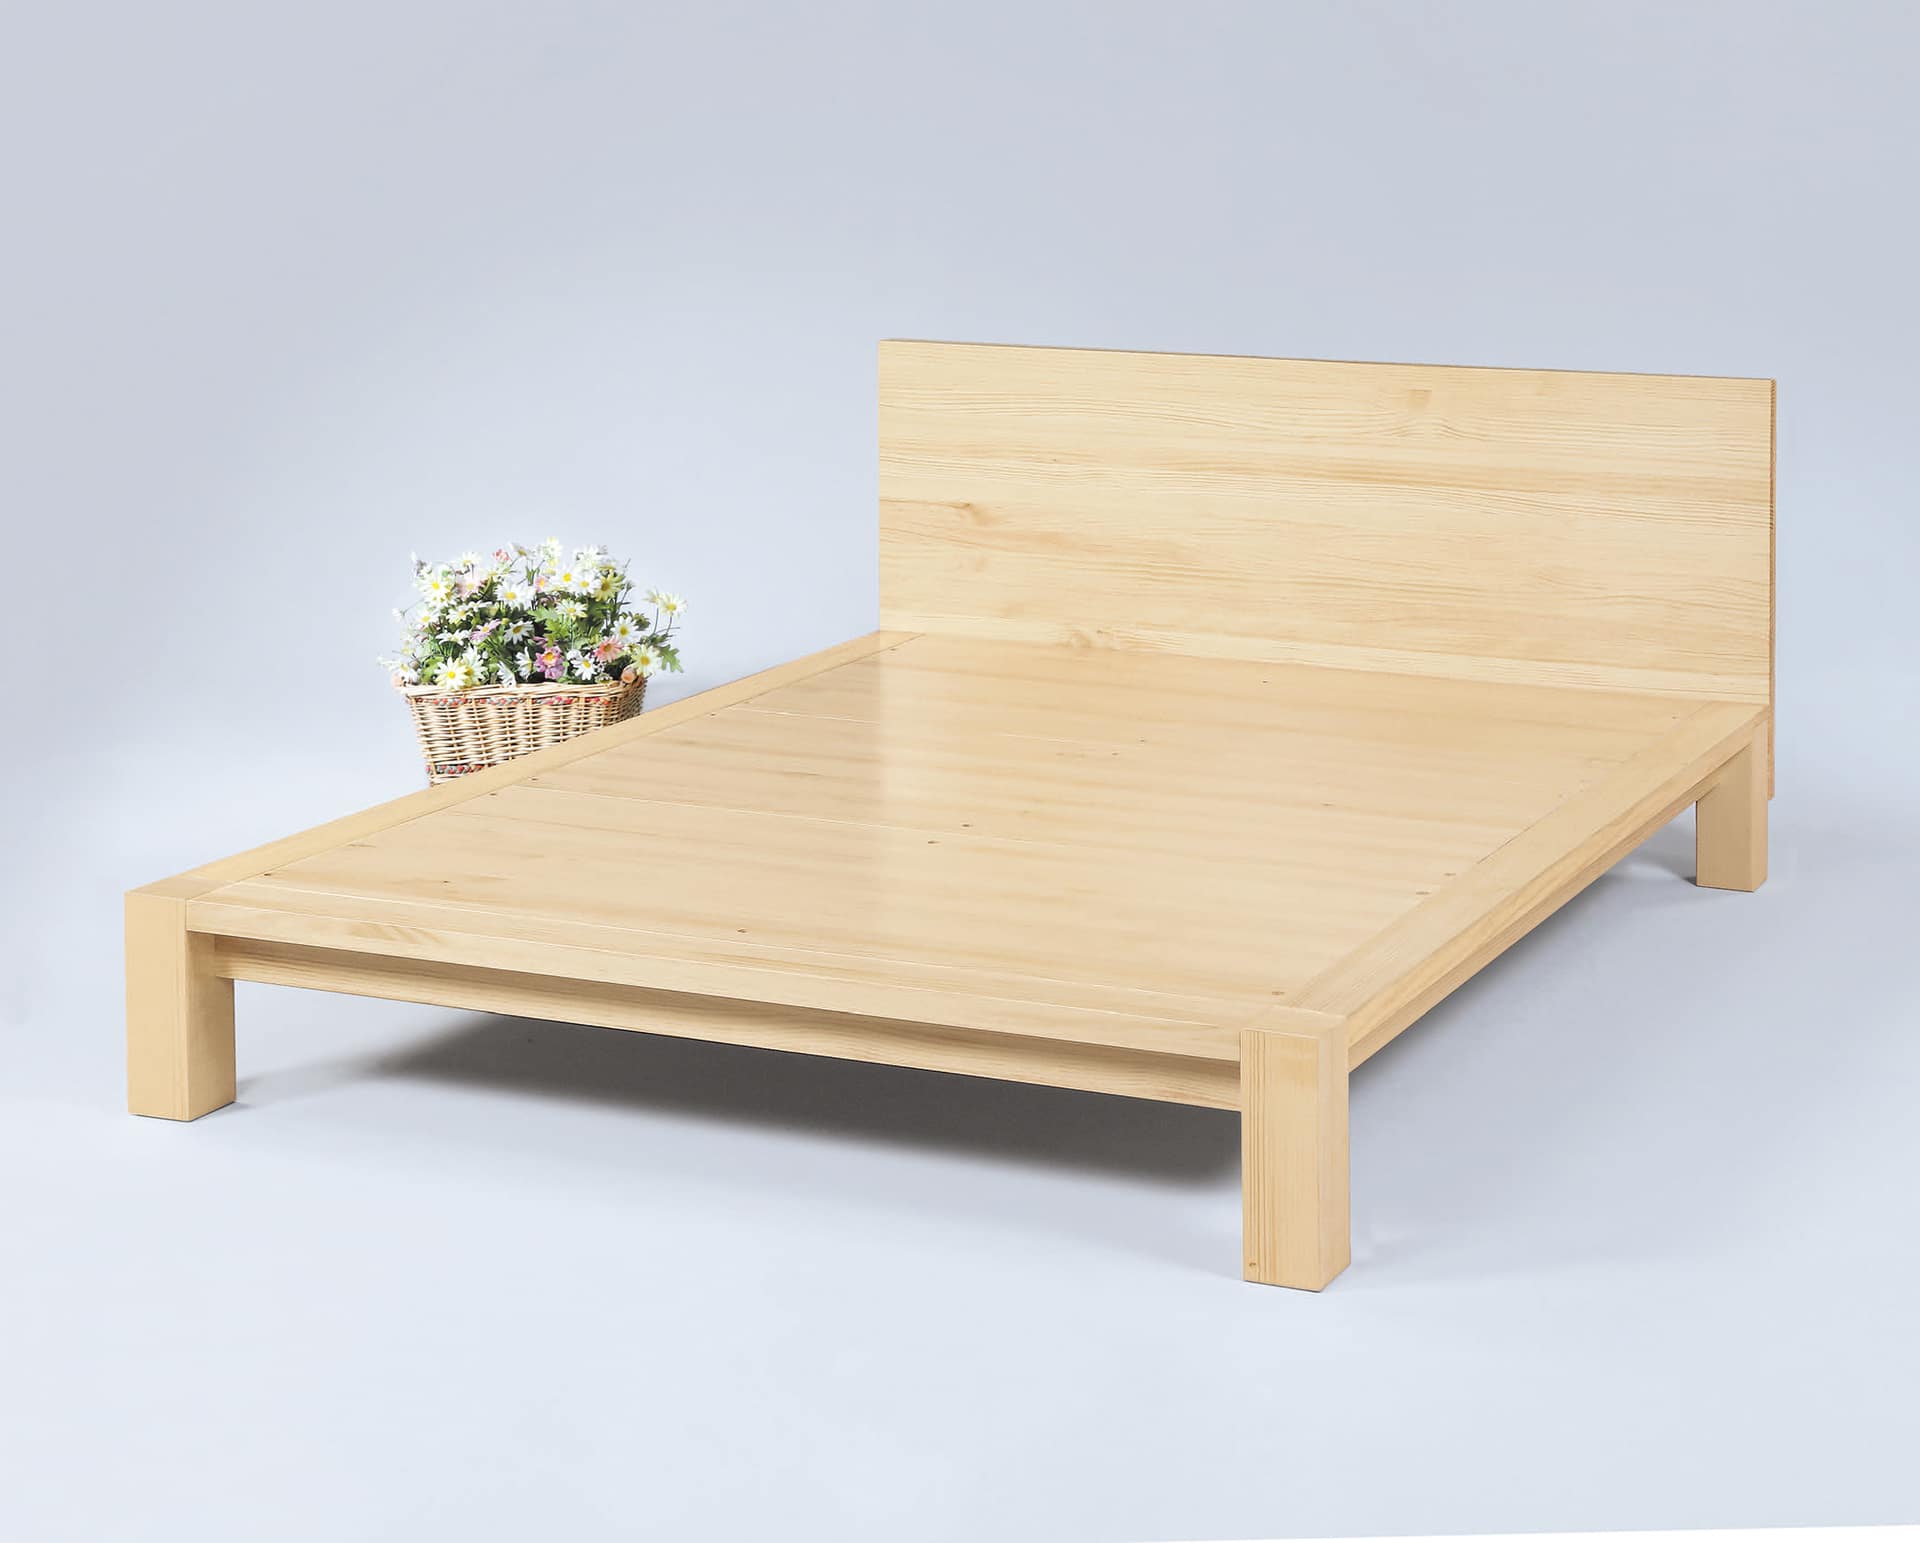 平台式床架種類多為木質所製